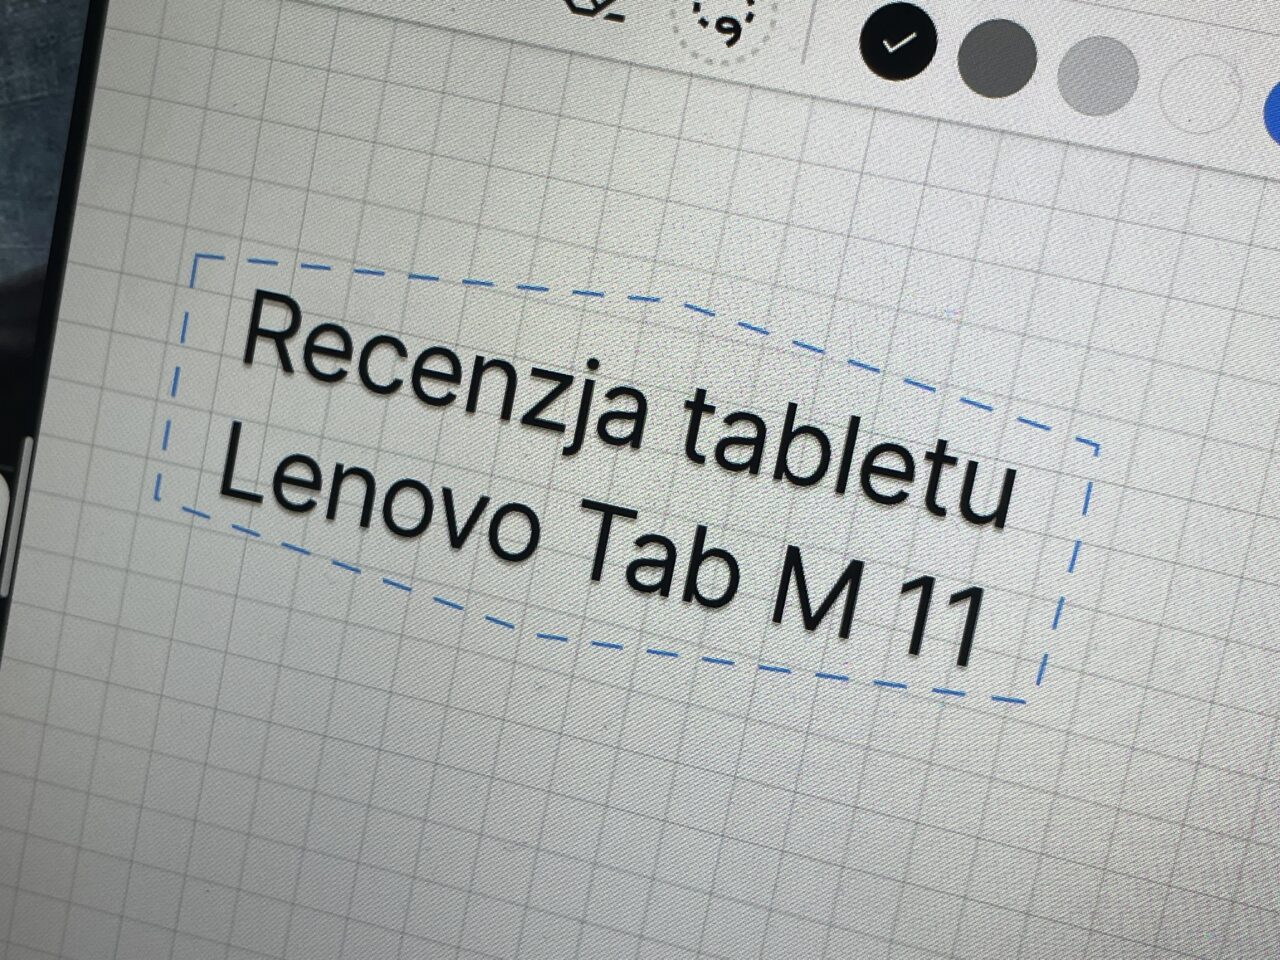 Zrzut ekranu z tekstem "Recenzja tabletu Lenovo Tab M 11" wyświetlony na ekranie urządzenia z zaznaczonym tekstem przerywaną linią.